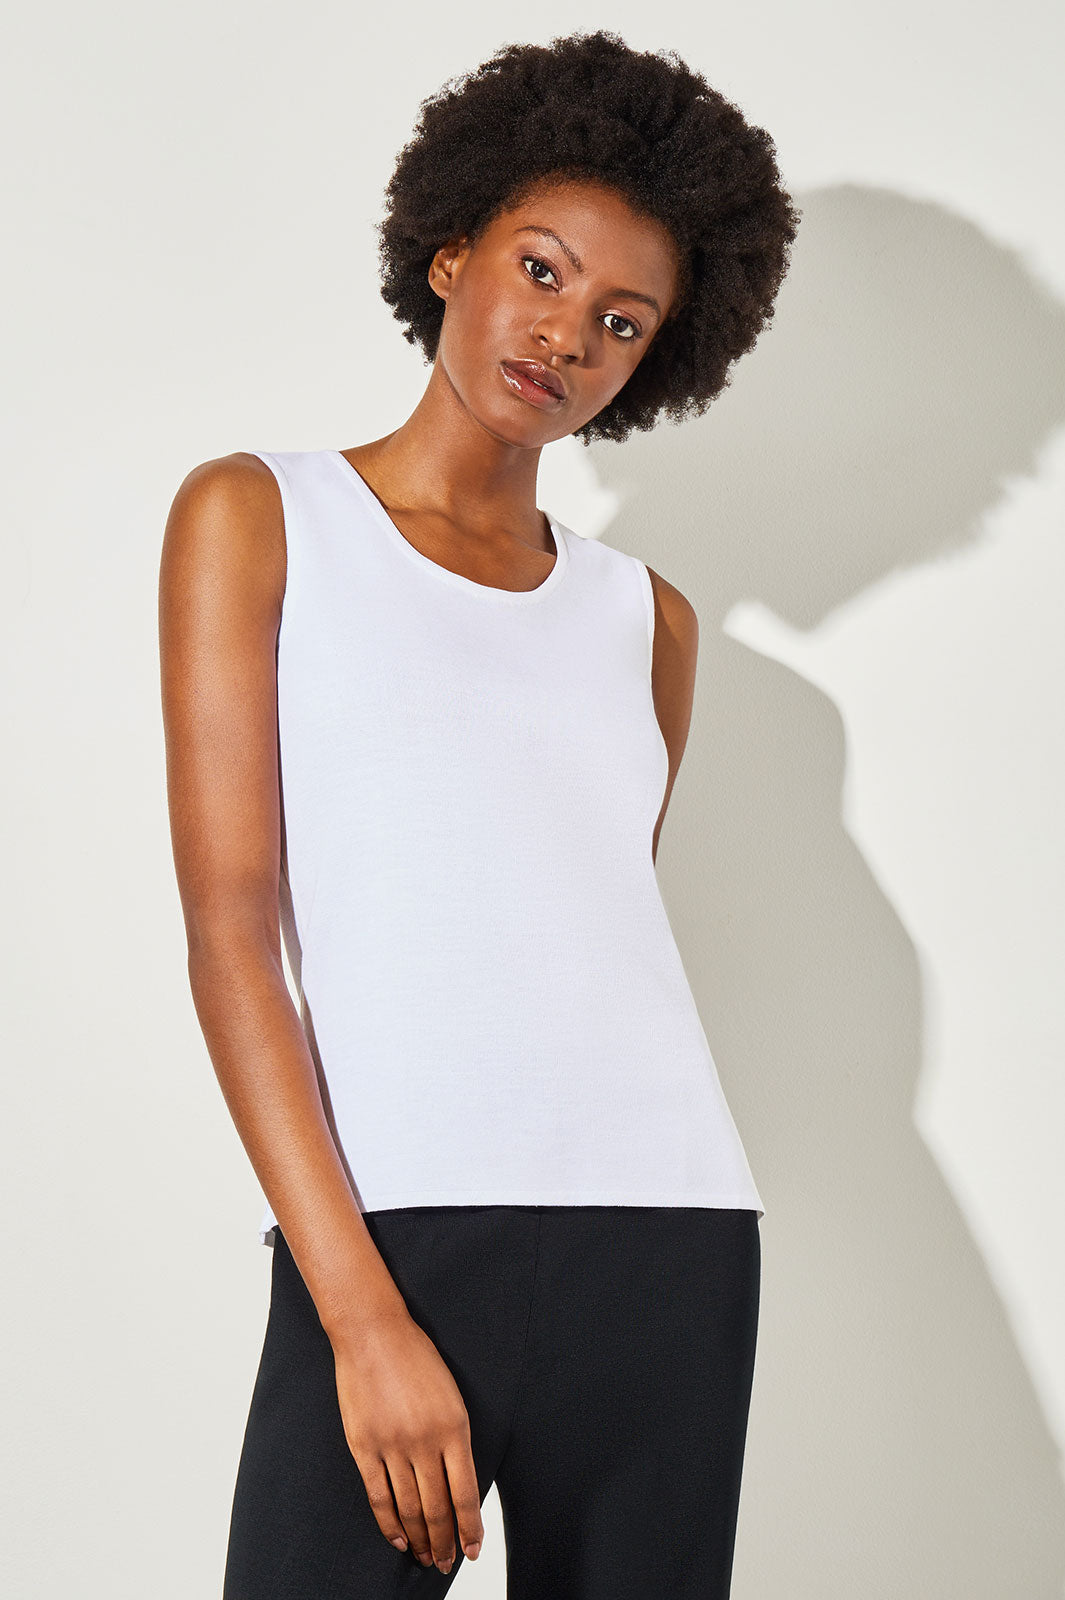 MiaBera Black and White Tank Tops for Women Plus Size Sleeveless